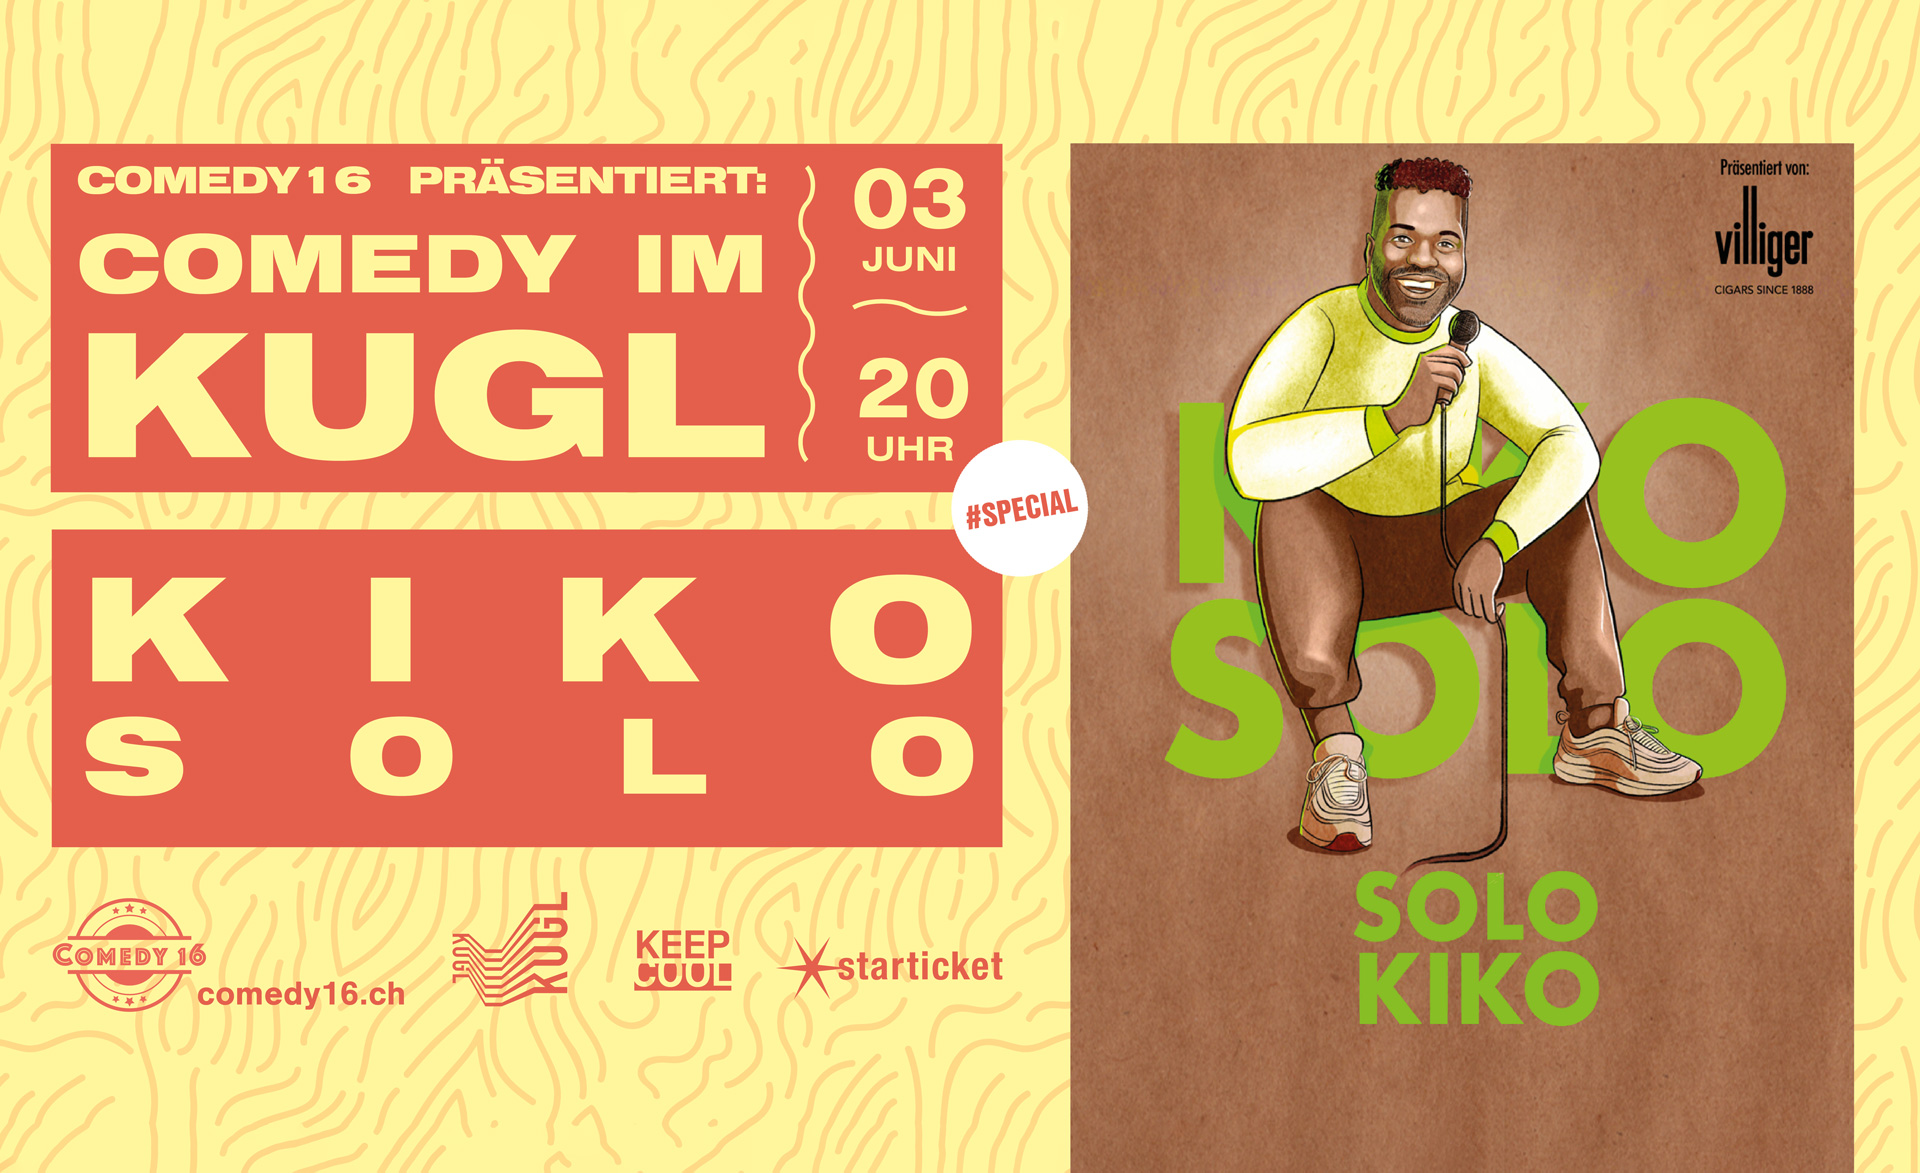 Comedy im KUGL | Kiko mit "Solo"